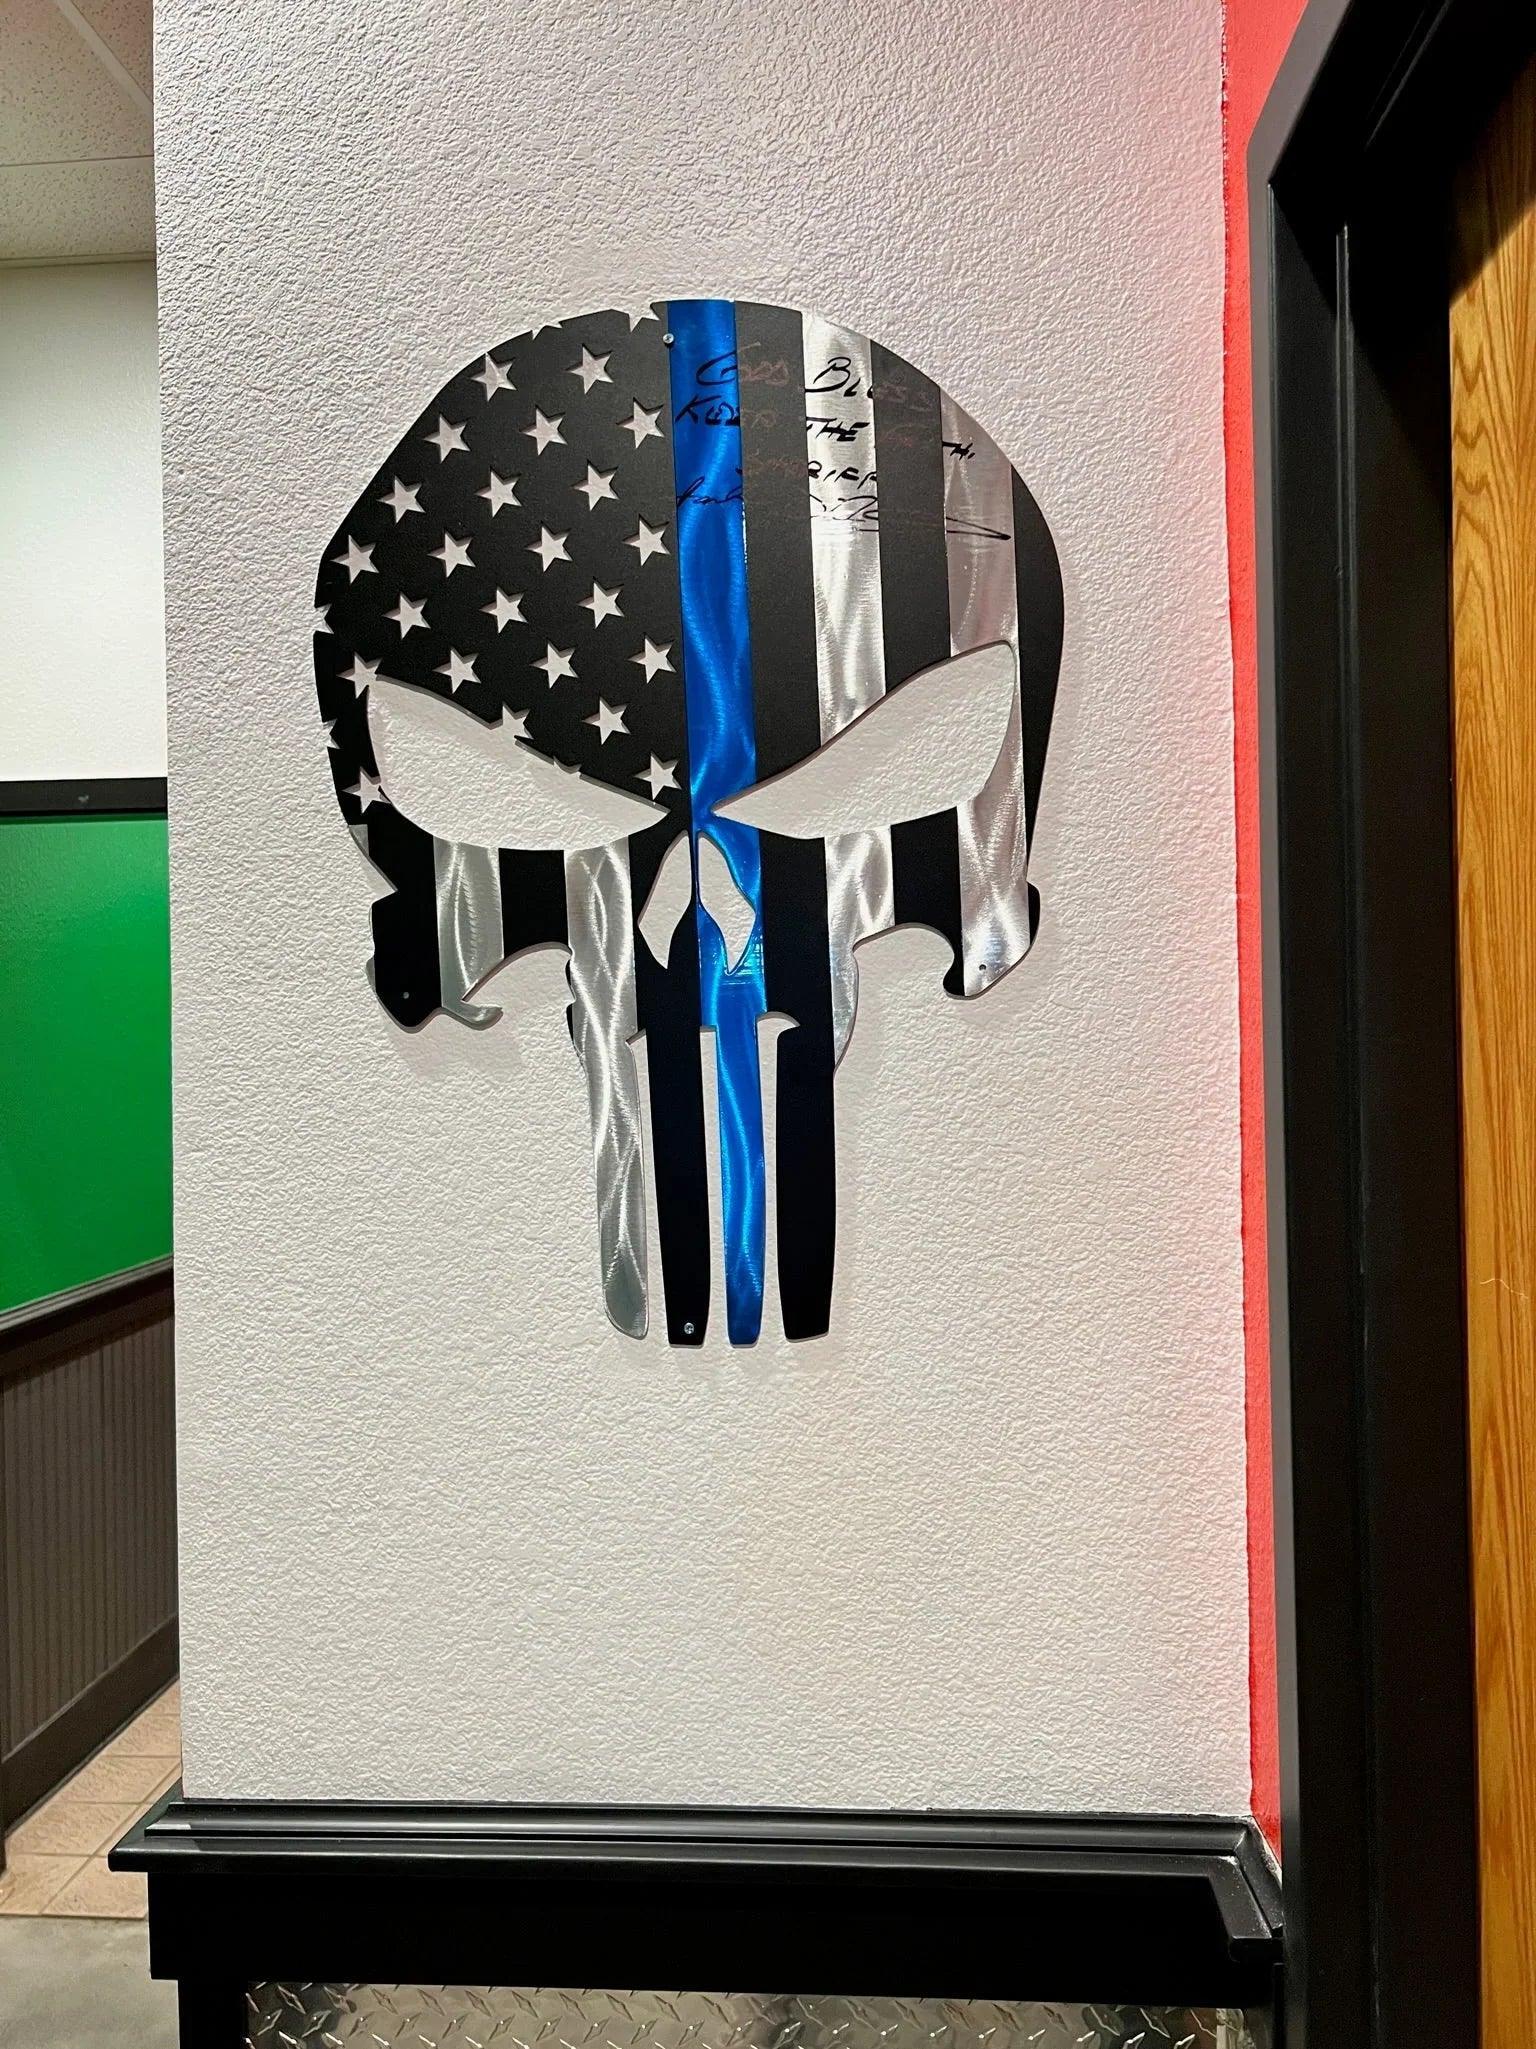 Flag - Punisher Skull American Flag - In Stock